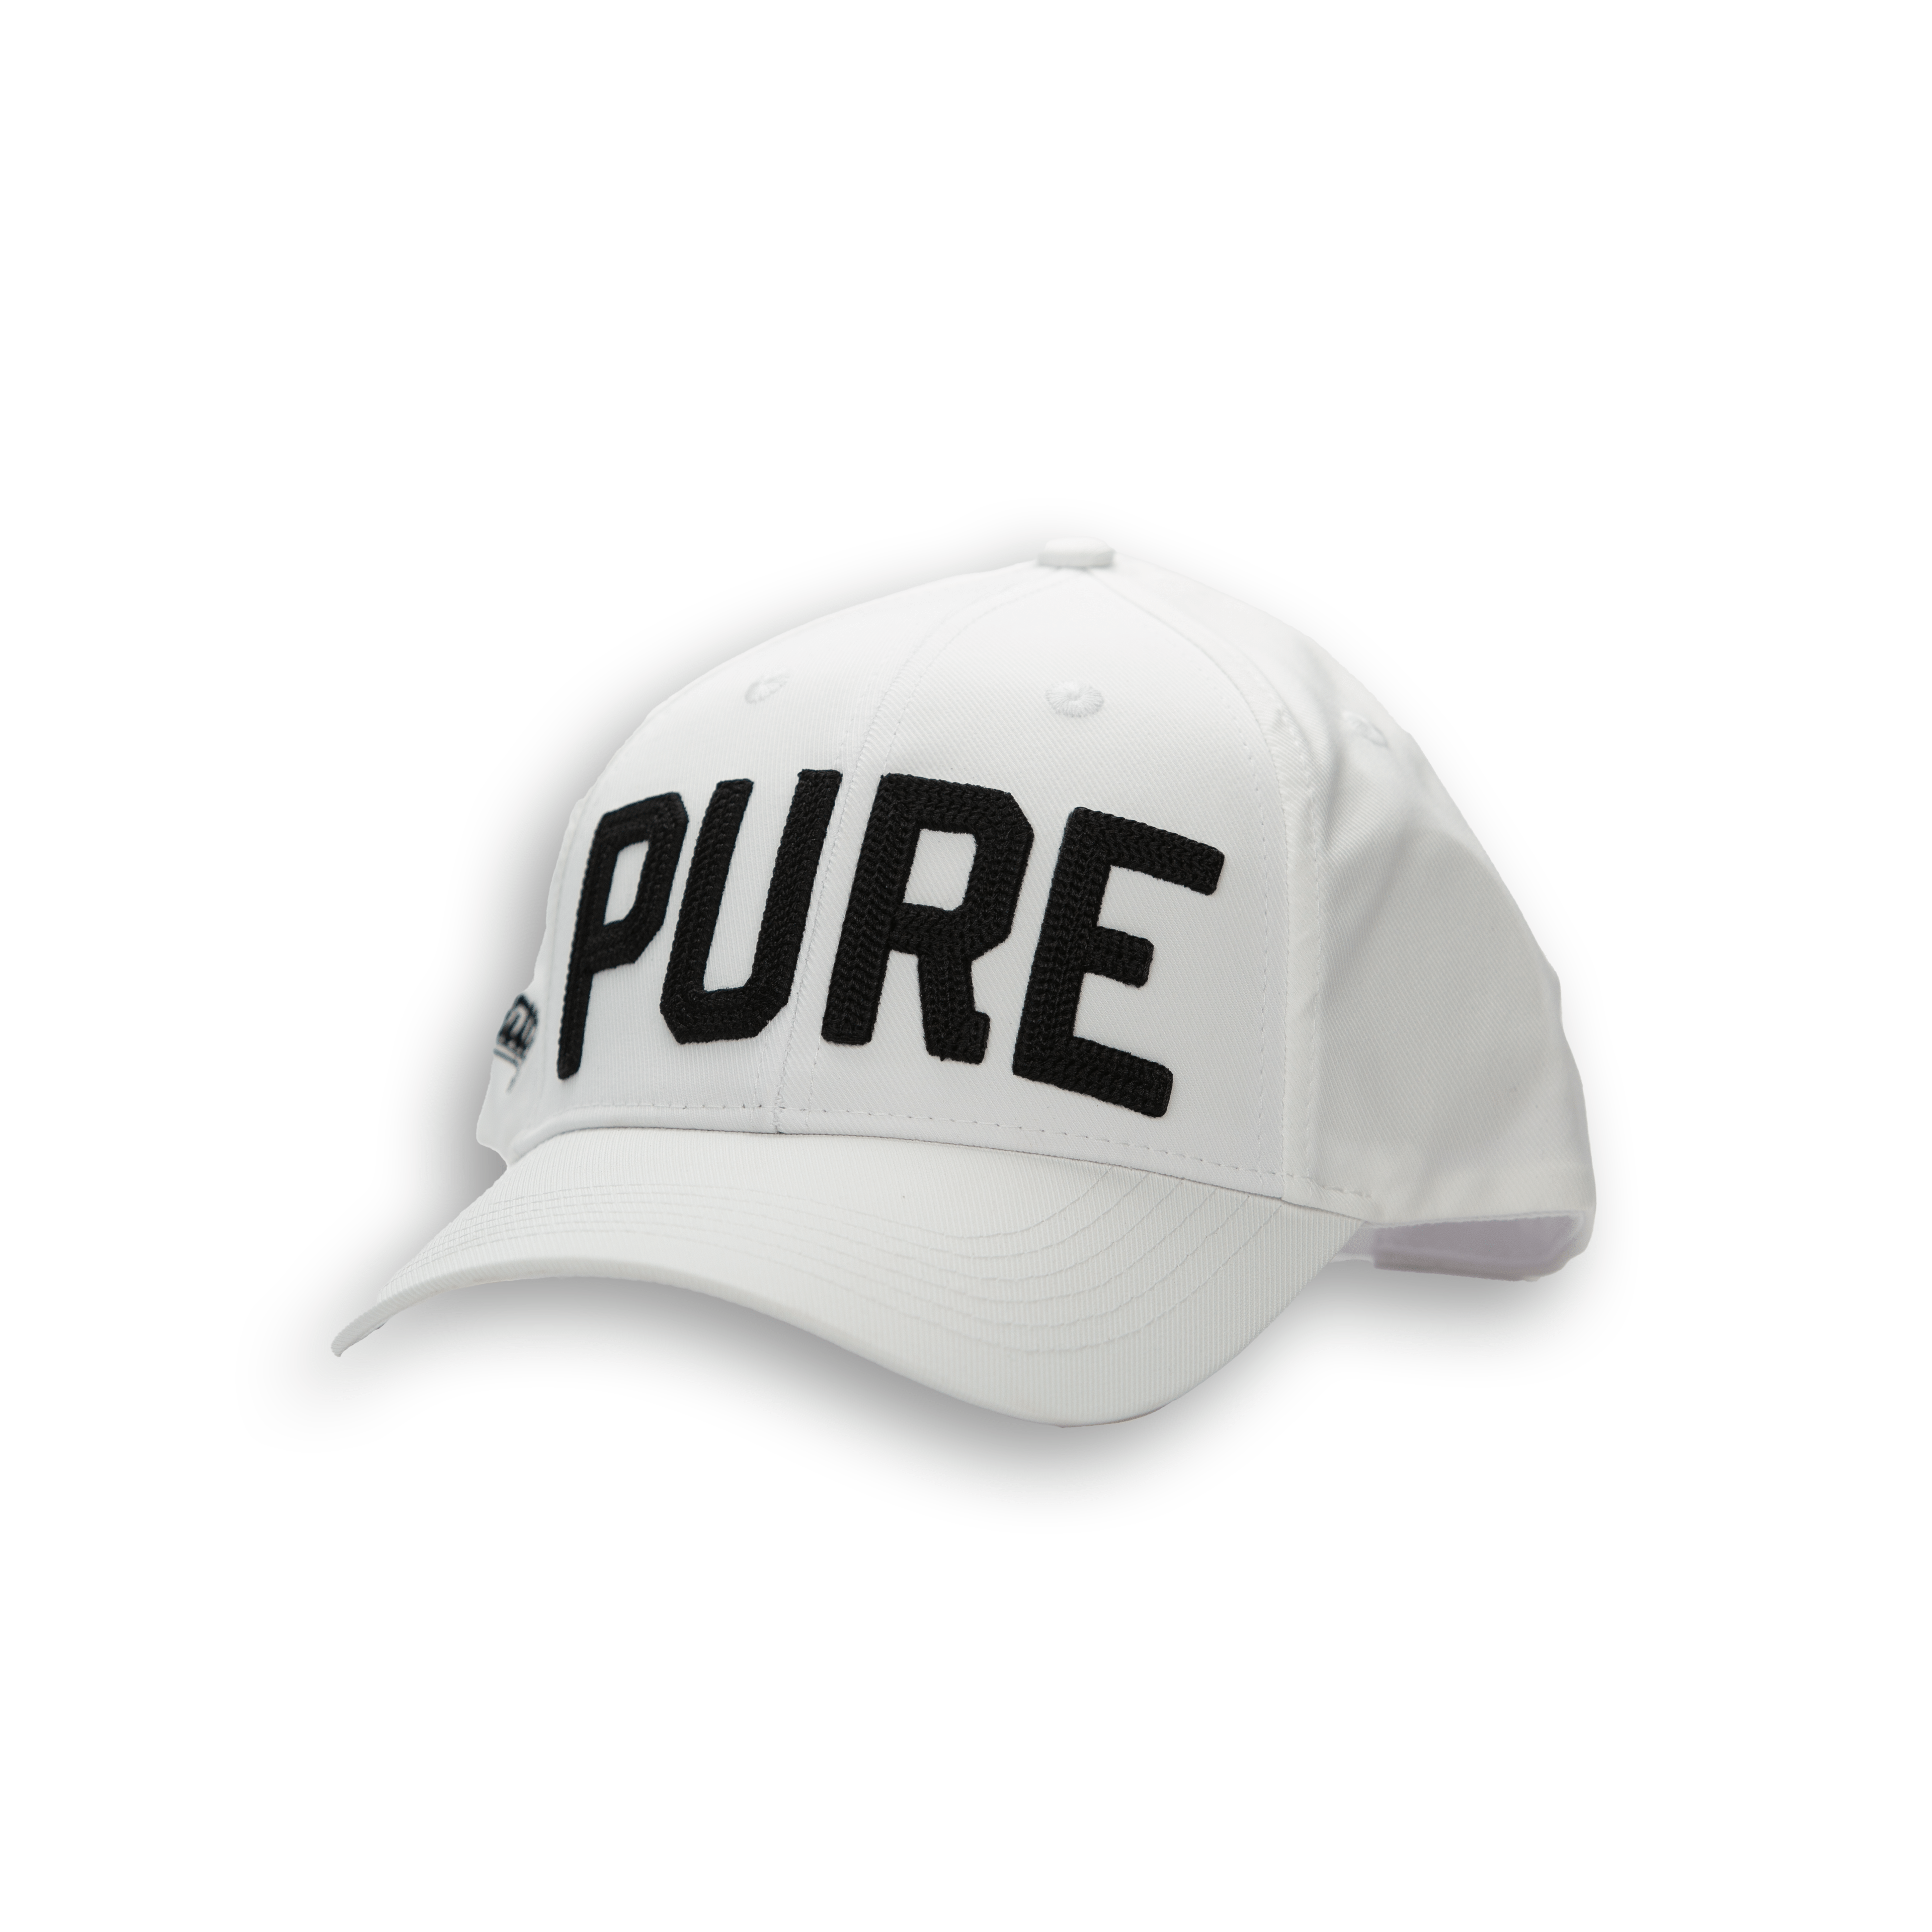 PURE Hat - 2putt